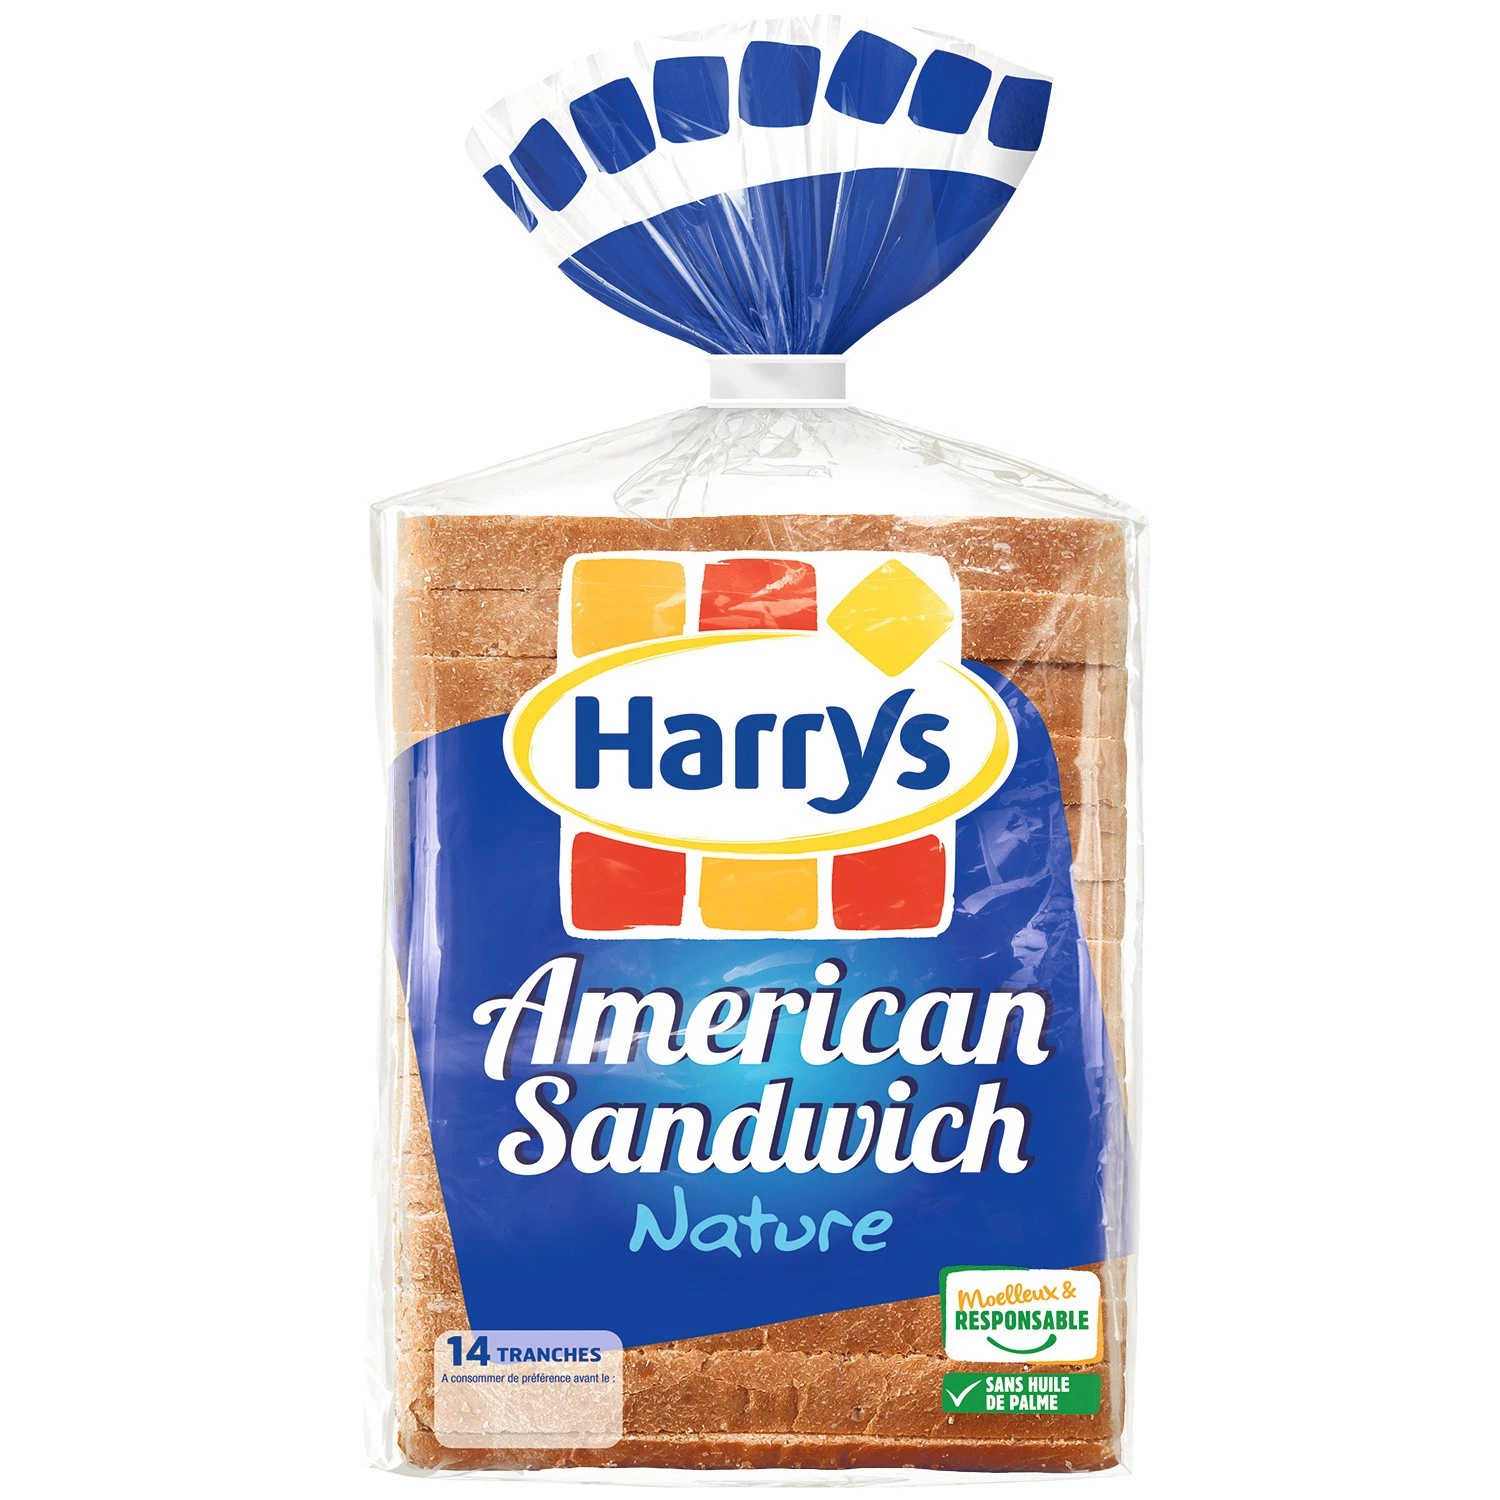 Pain de mie nature Amerikanisches Sandwich x14 550g - HARRY'S